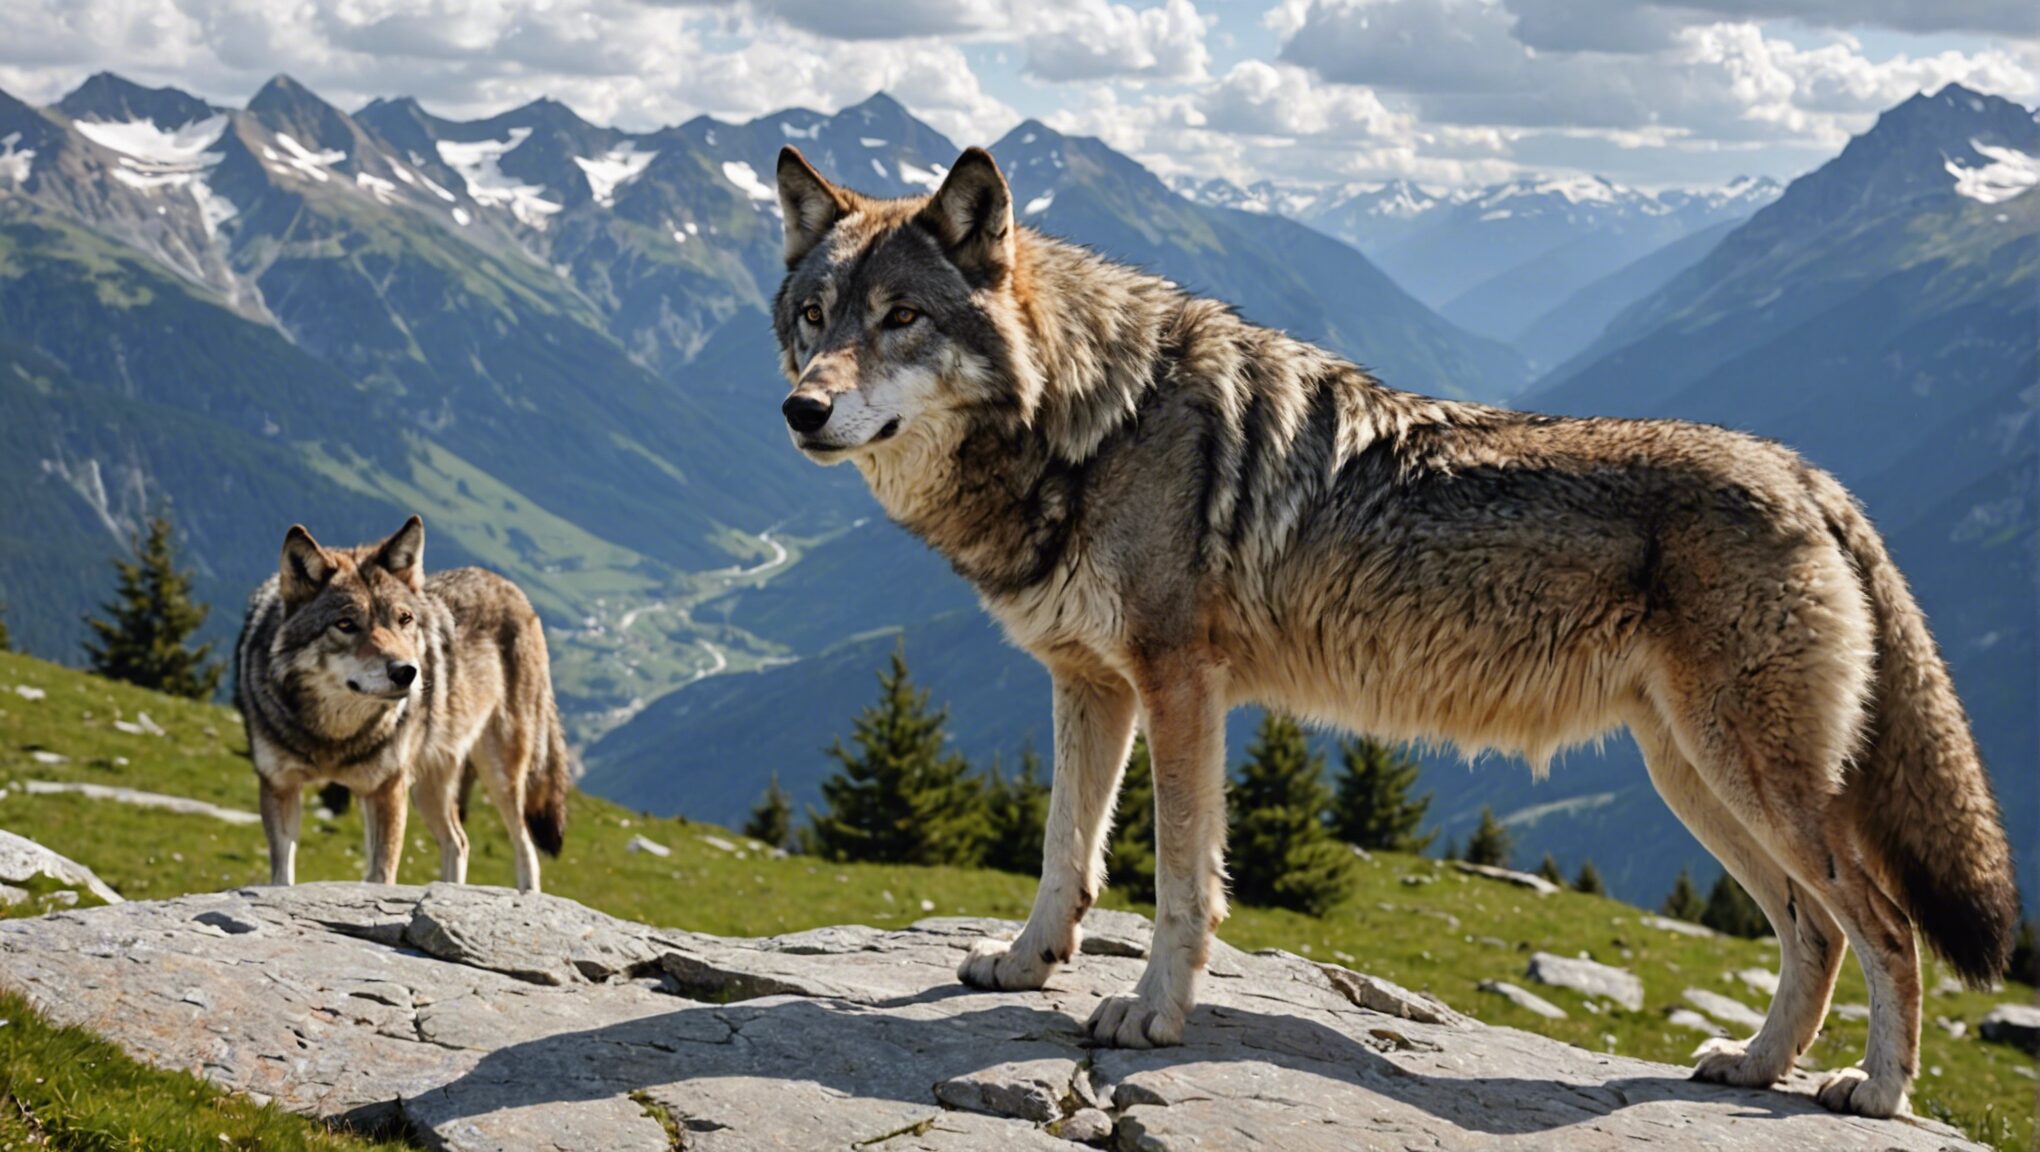 découvrez les meilleurs conseils pour observer les loups dans les splendides alpes françaises et vivez une expérience unique en pleine nature.